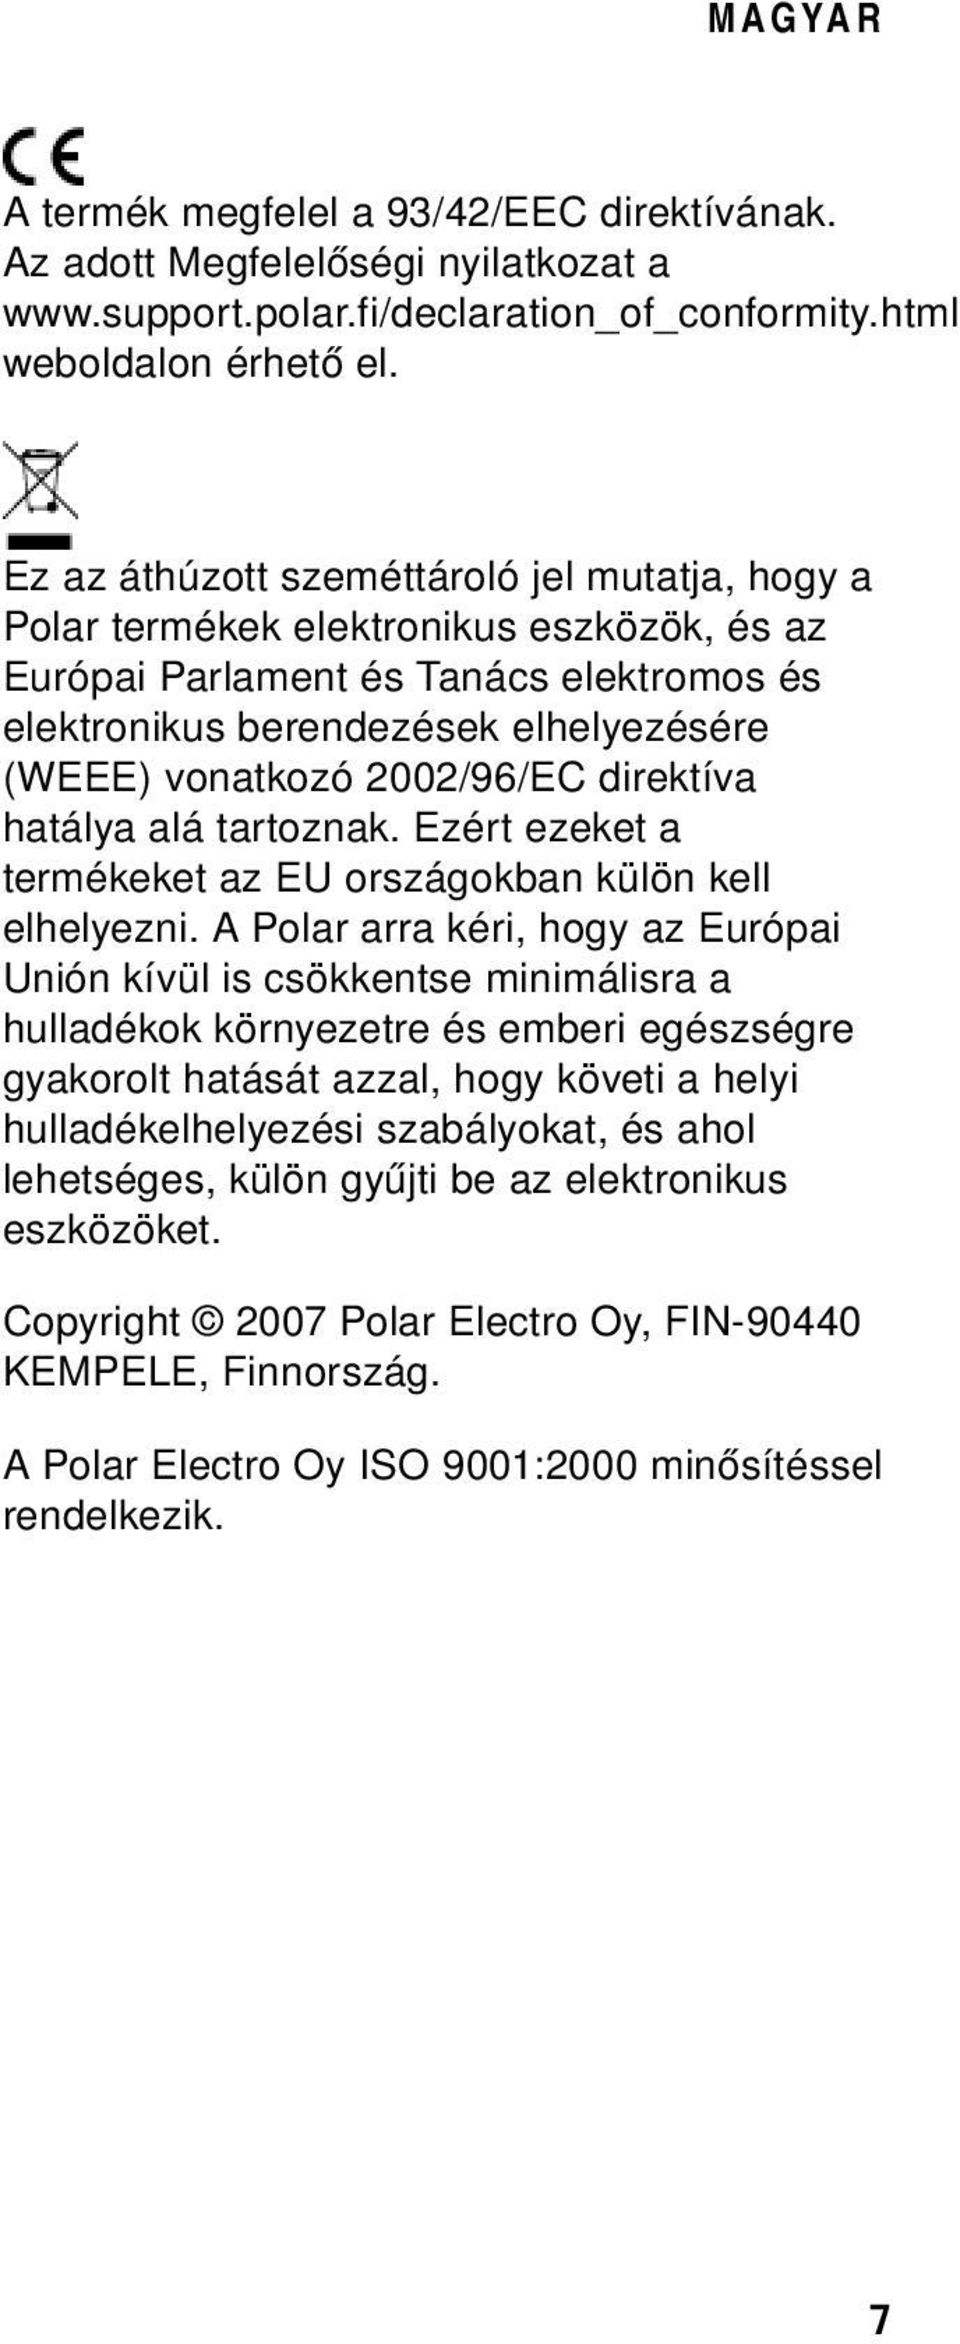 2002/96/EC direktíva hatálya alá tartoznak. Ezért ezeket a termékeket az EU országokban külön kell elhelyezni.